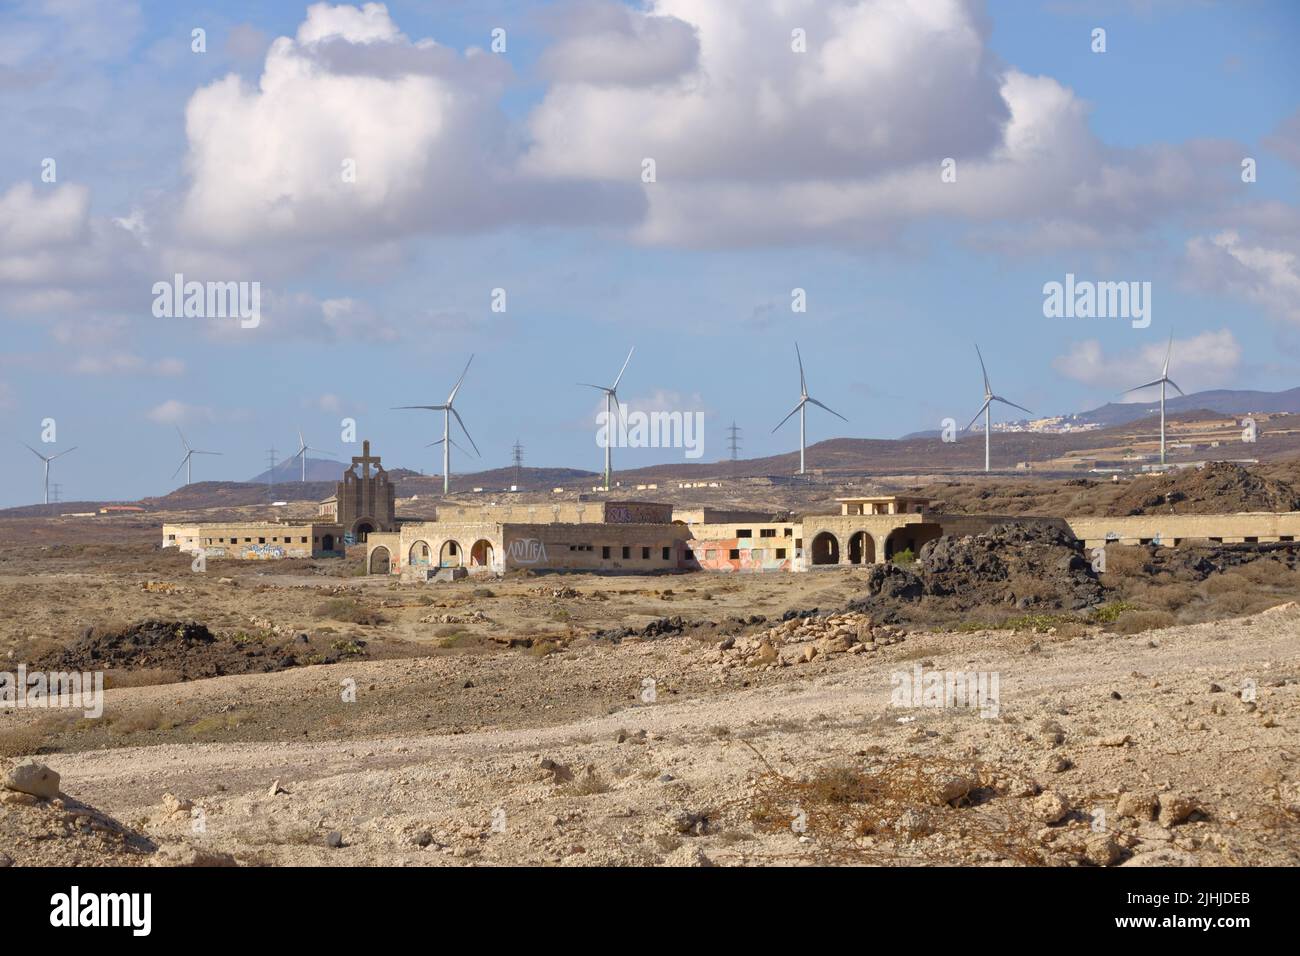 November 18 2021 - Abades, Spanien Teneriffa: Das ehemalige Sanatorio de Abona, die Lepra-Station von Abades Stockfoto